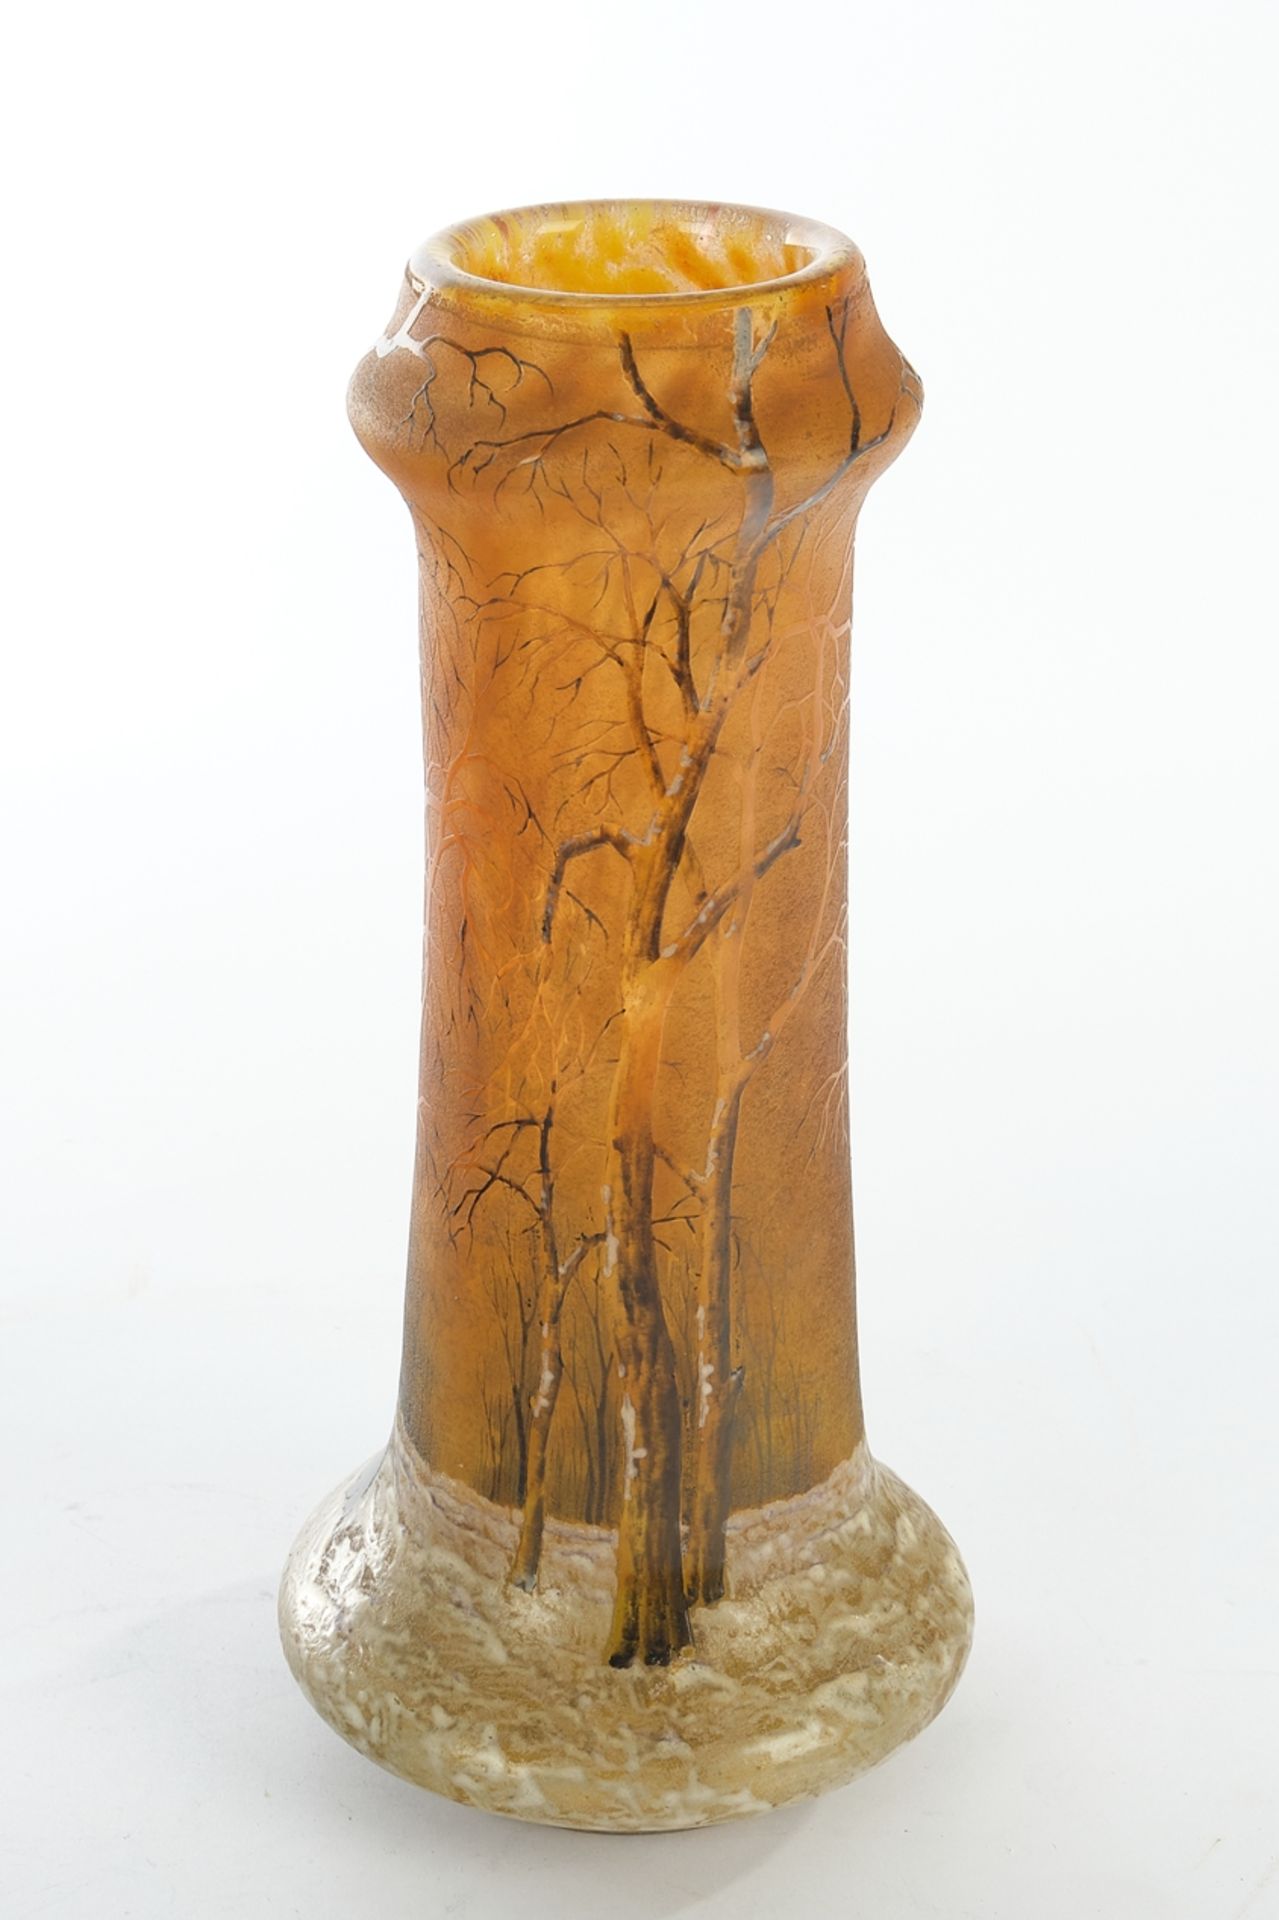 Vase, "Paysage en hiver", Daum, farbloses Glas mit gelber und apricotfarbener Pulvereinschmelzung, 